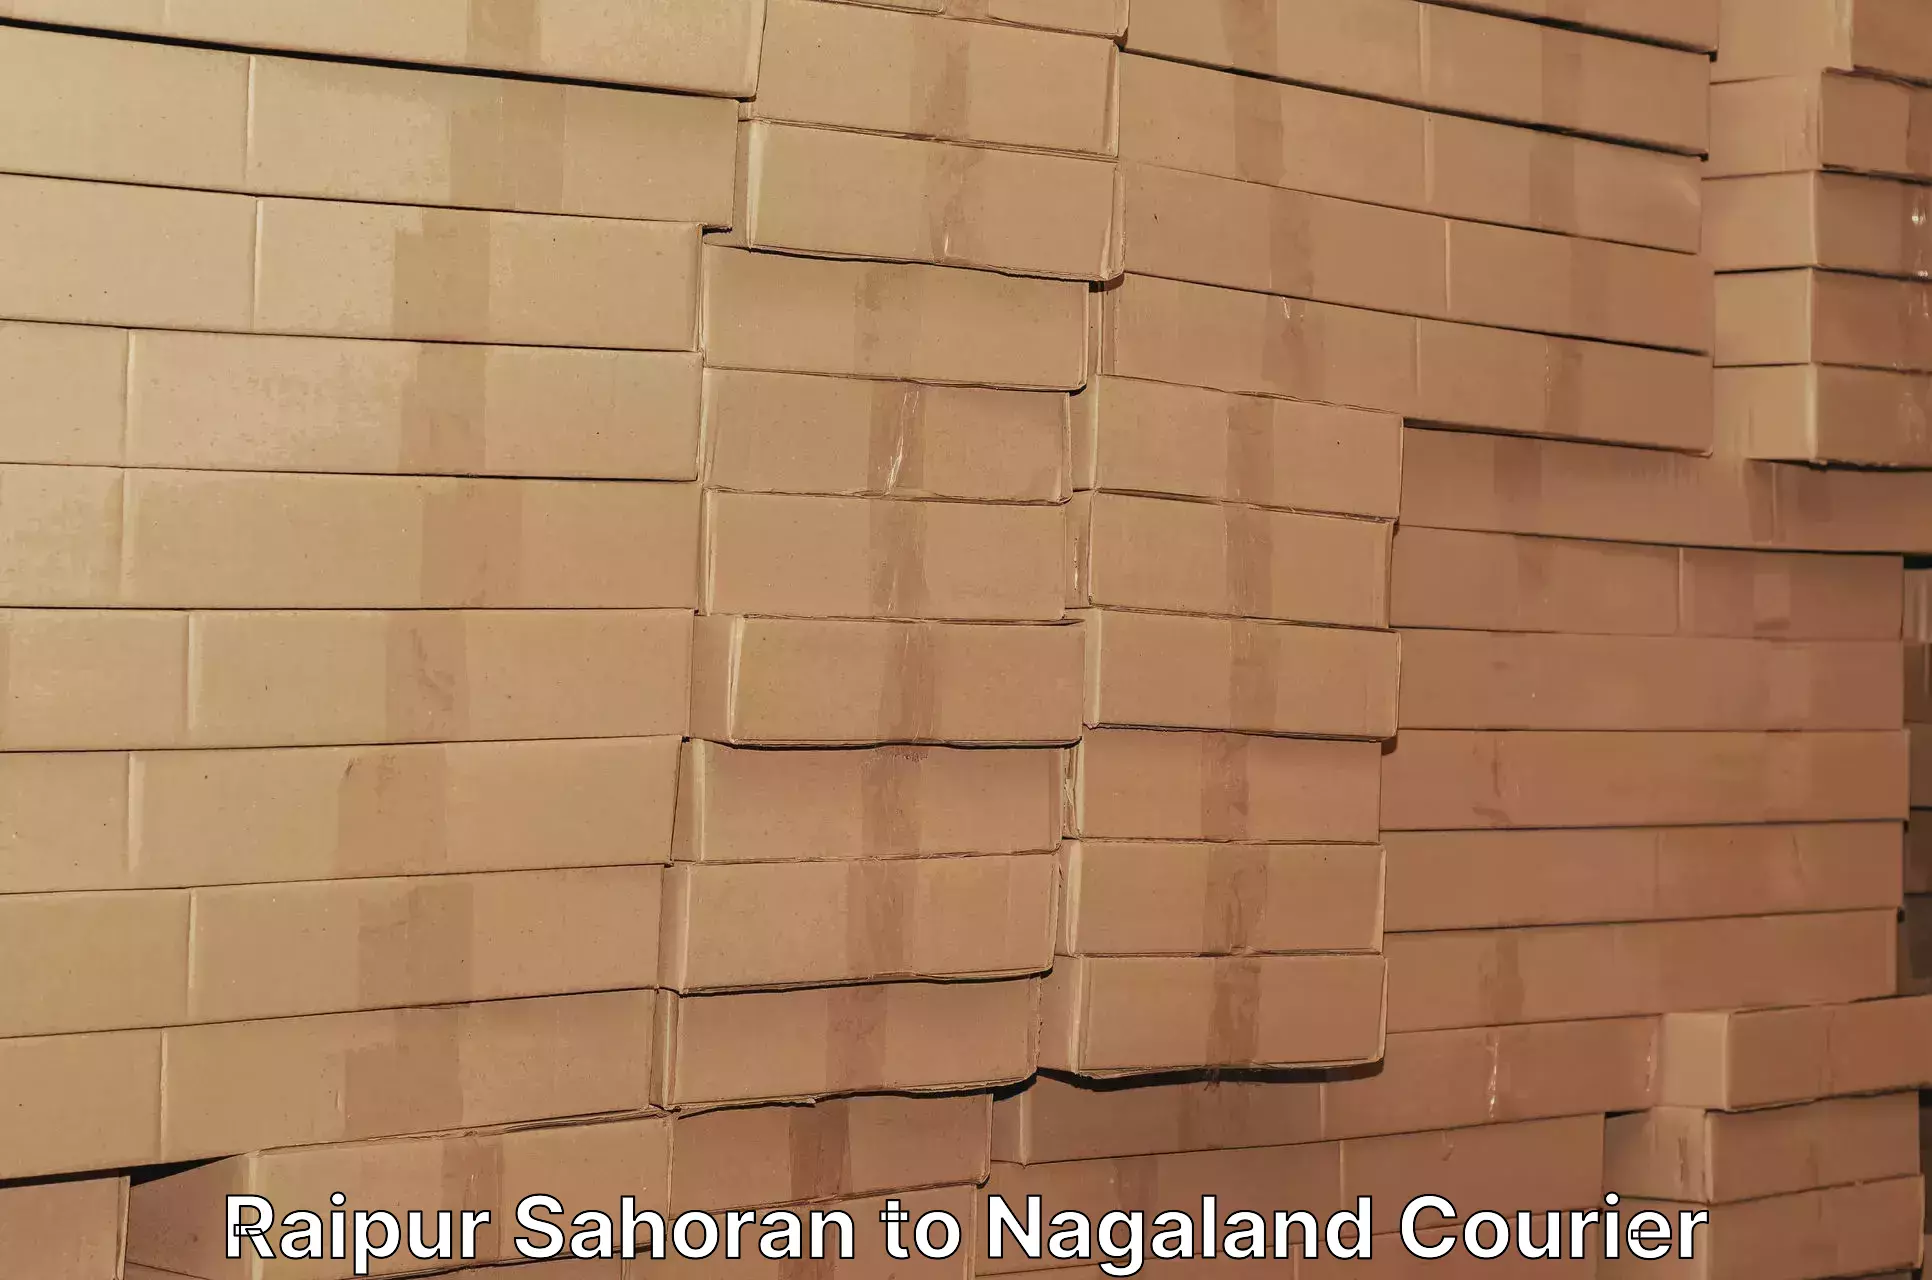 Efficient shipping operations in Raipur Sahoran to NIT Nagaland